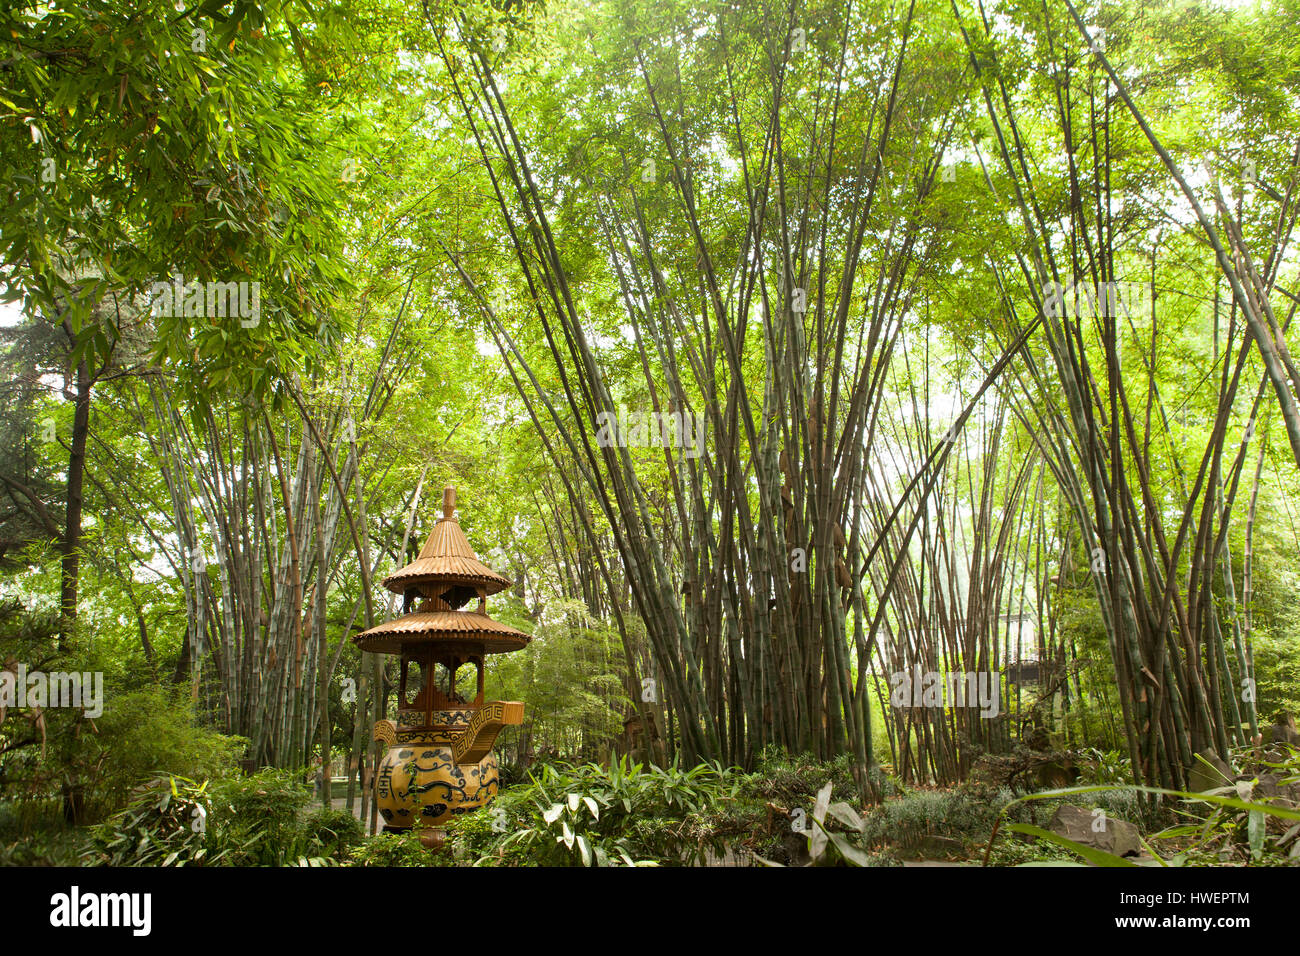 Pagoda in green bamboo forest, Wang jiang lou park, Chengdu, Sichuan, China Stock Photo